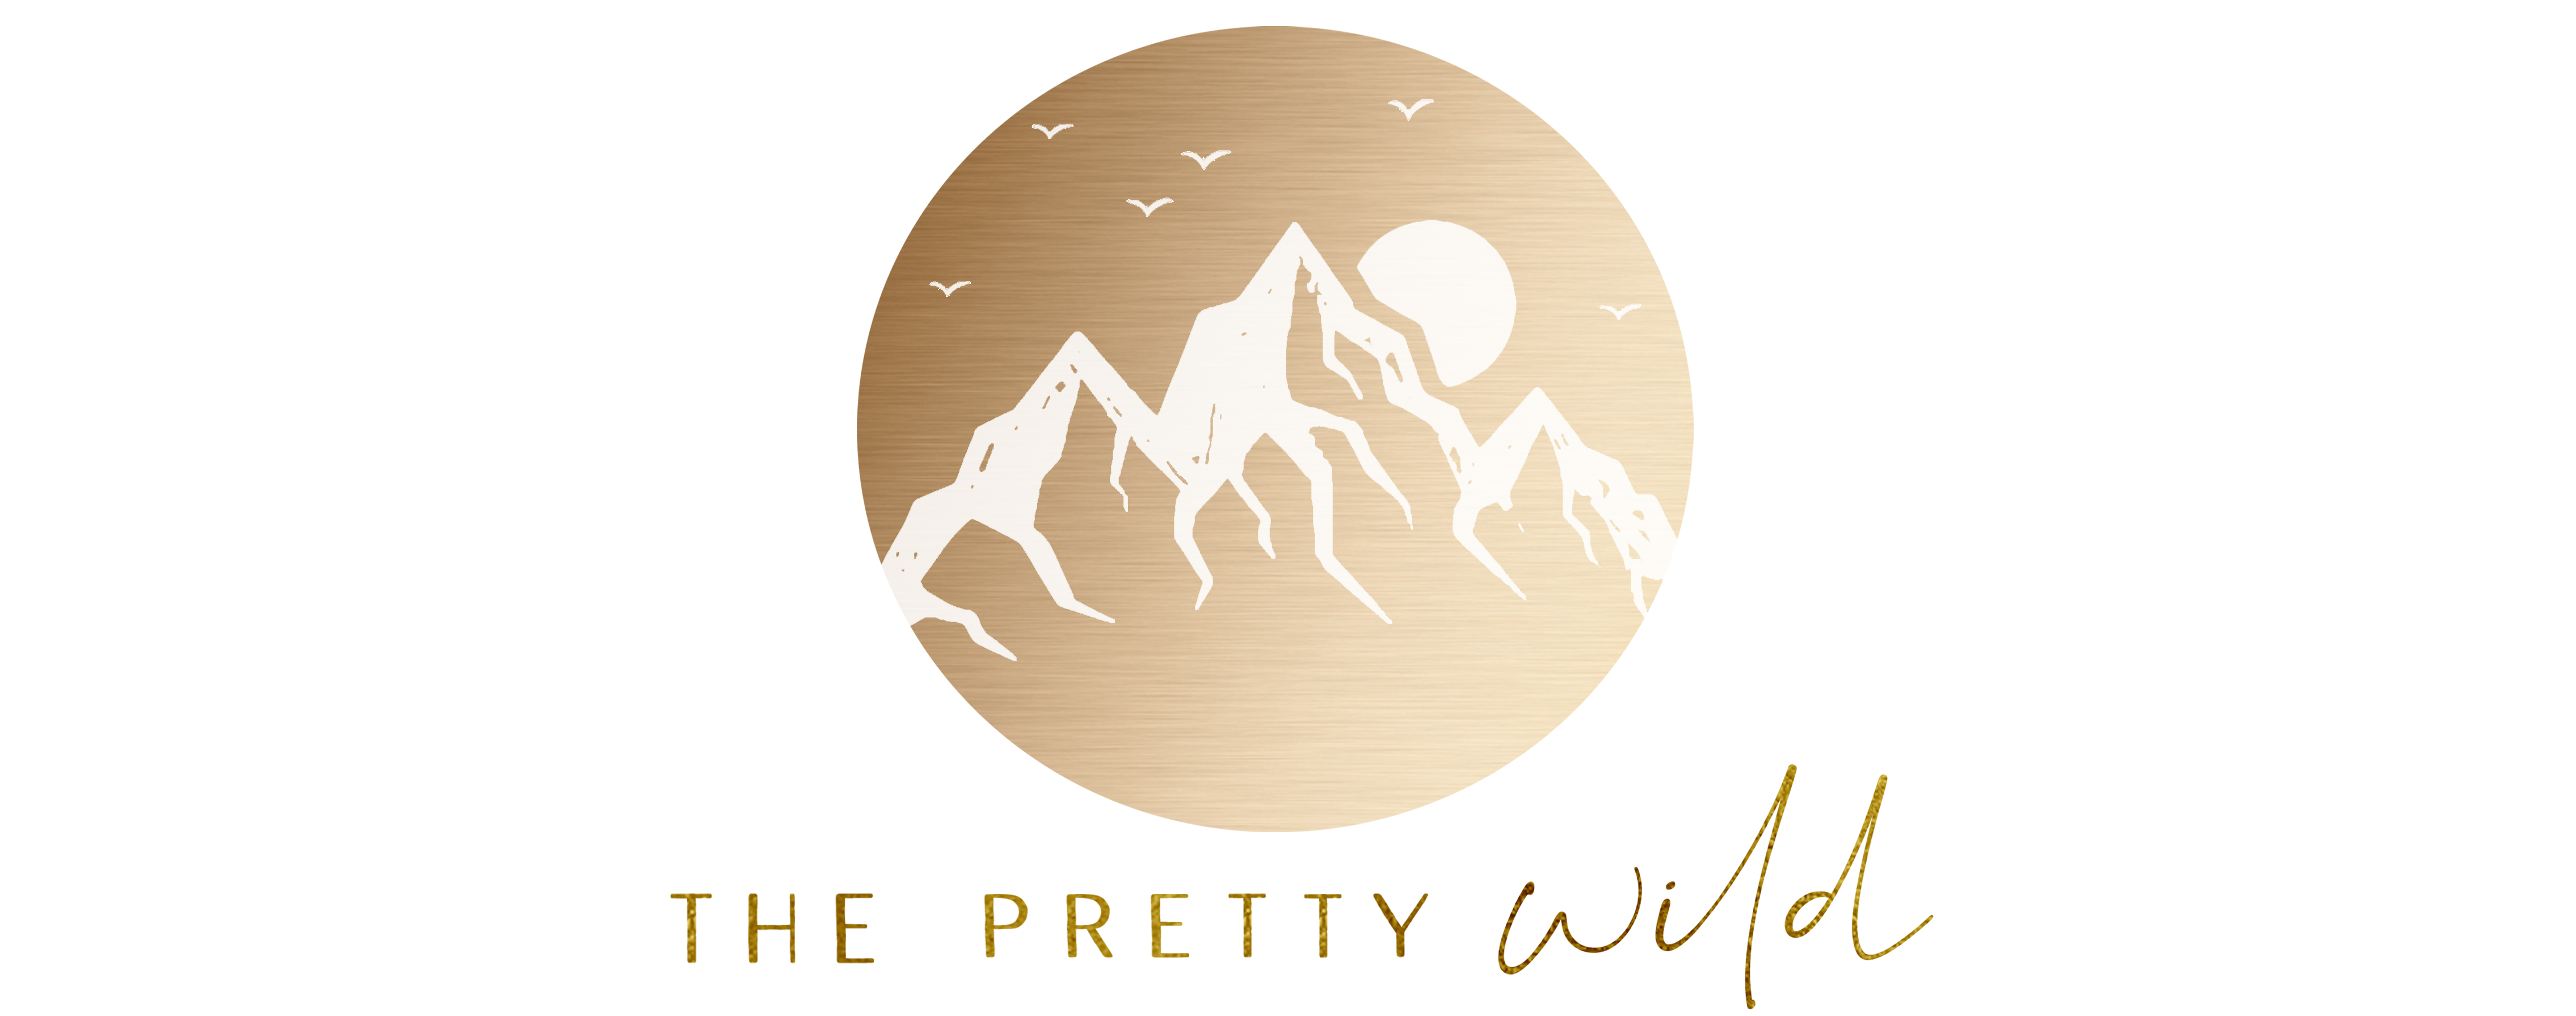 The Pretty Wild